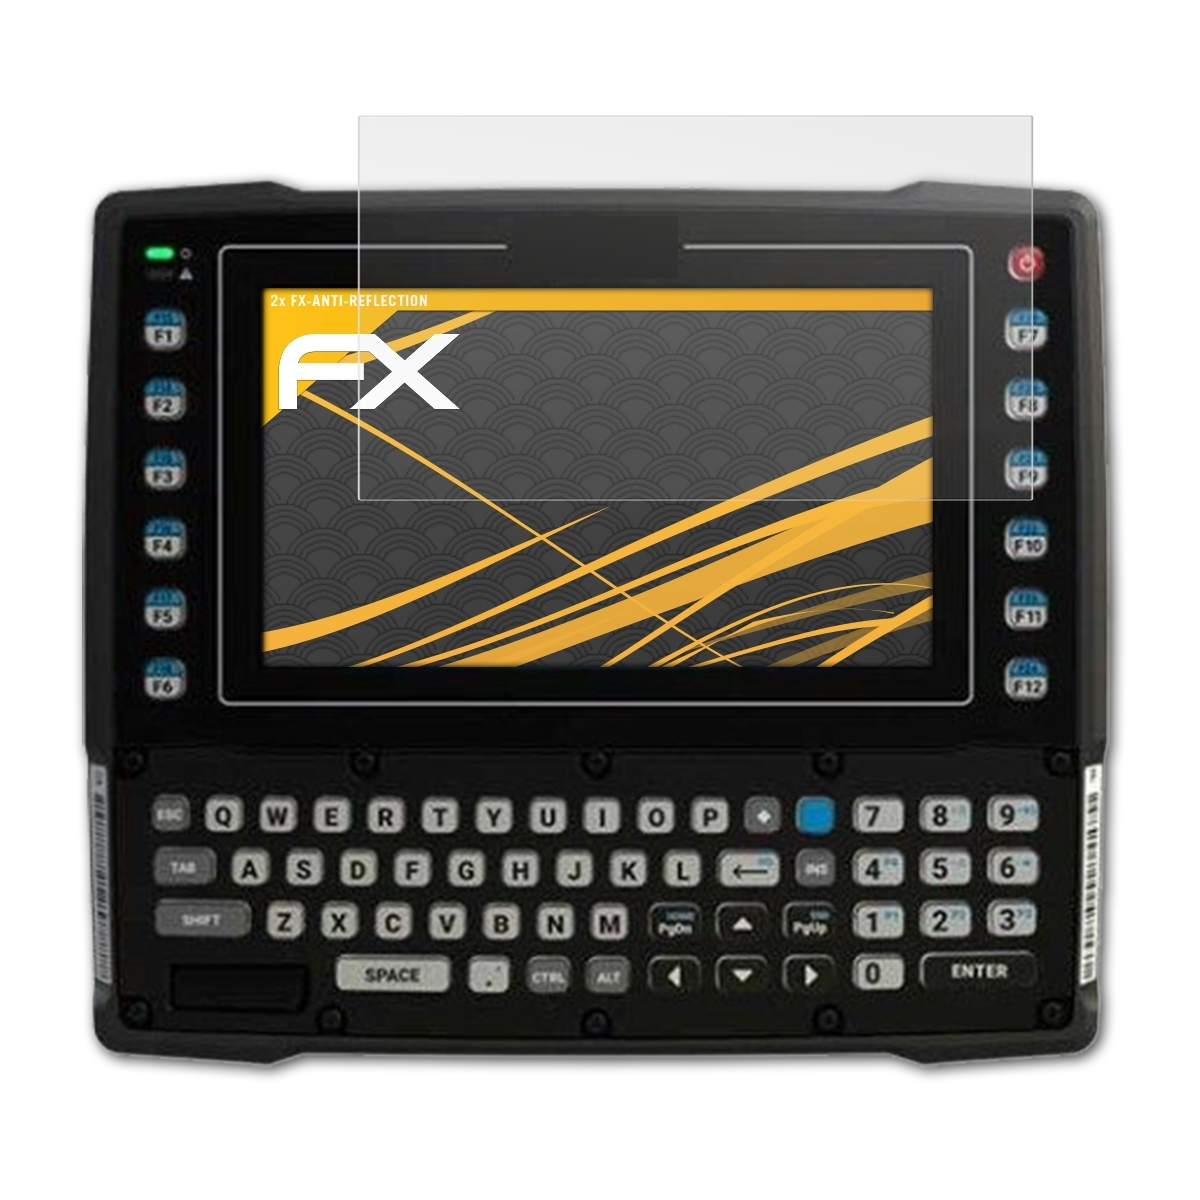 FX-Antireflex VC8300) ATFOLIX Zebra 2x Displayschutz(für